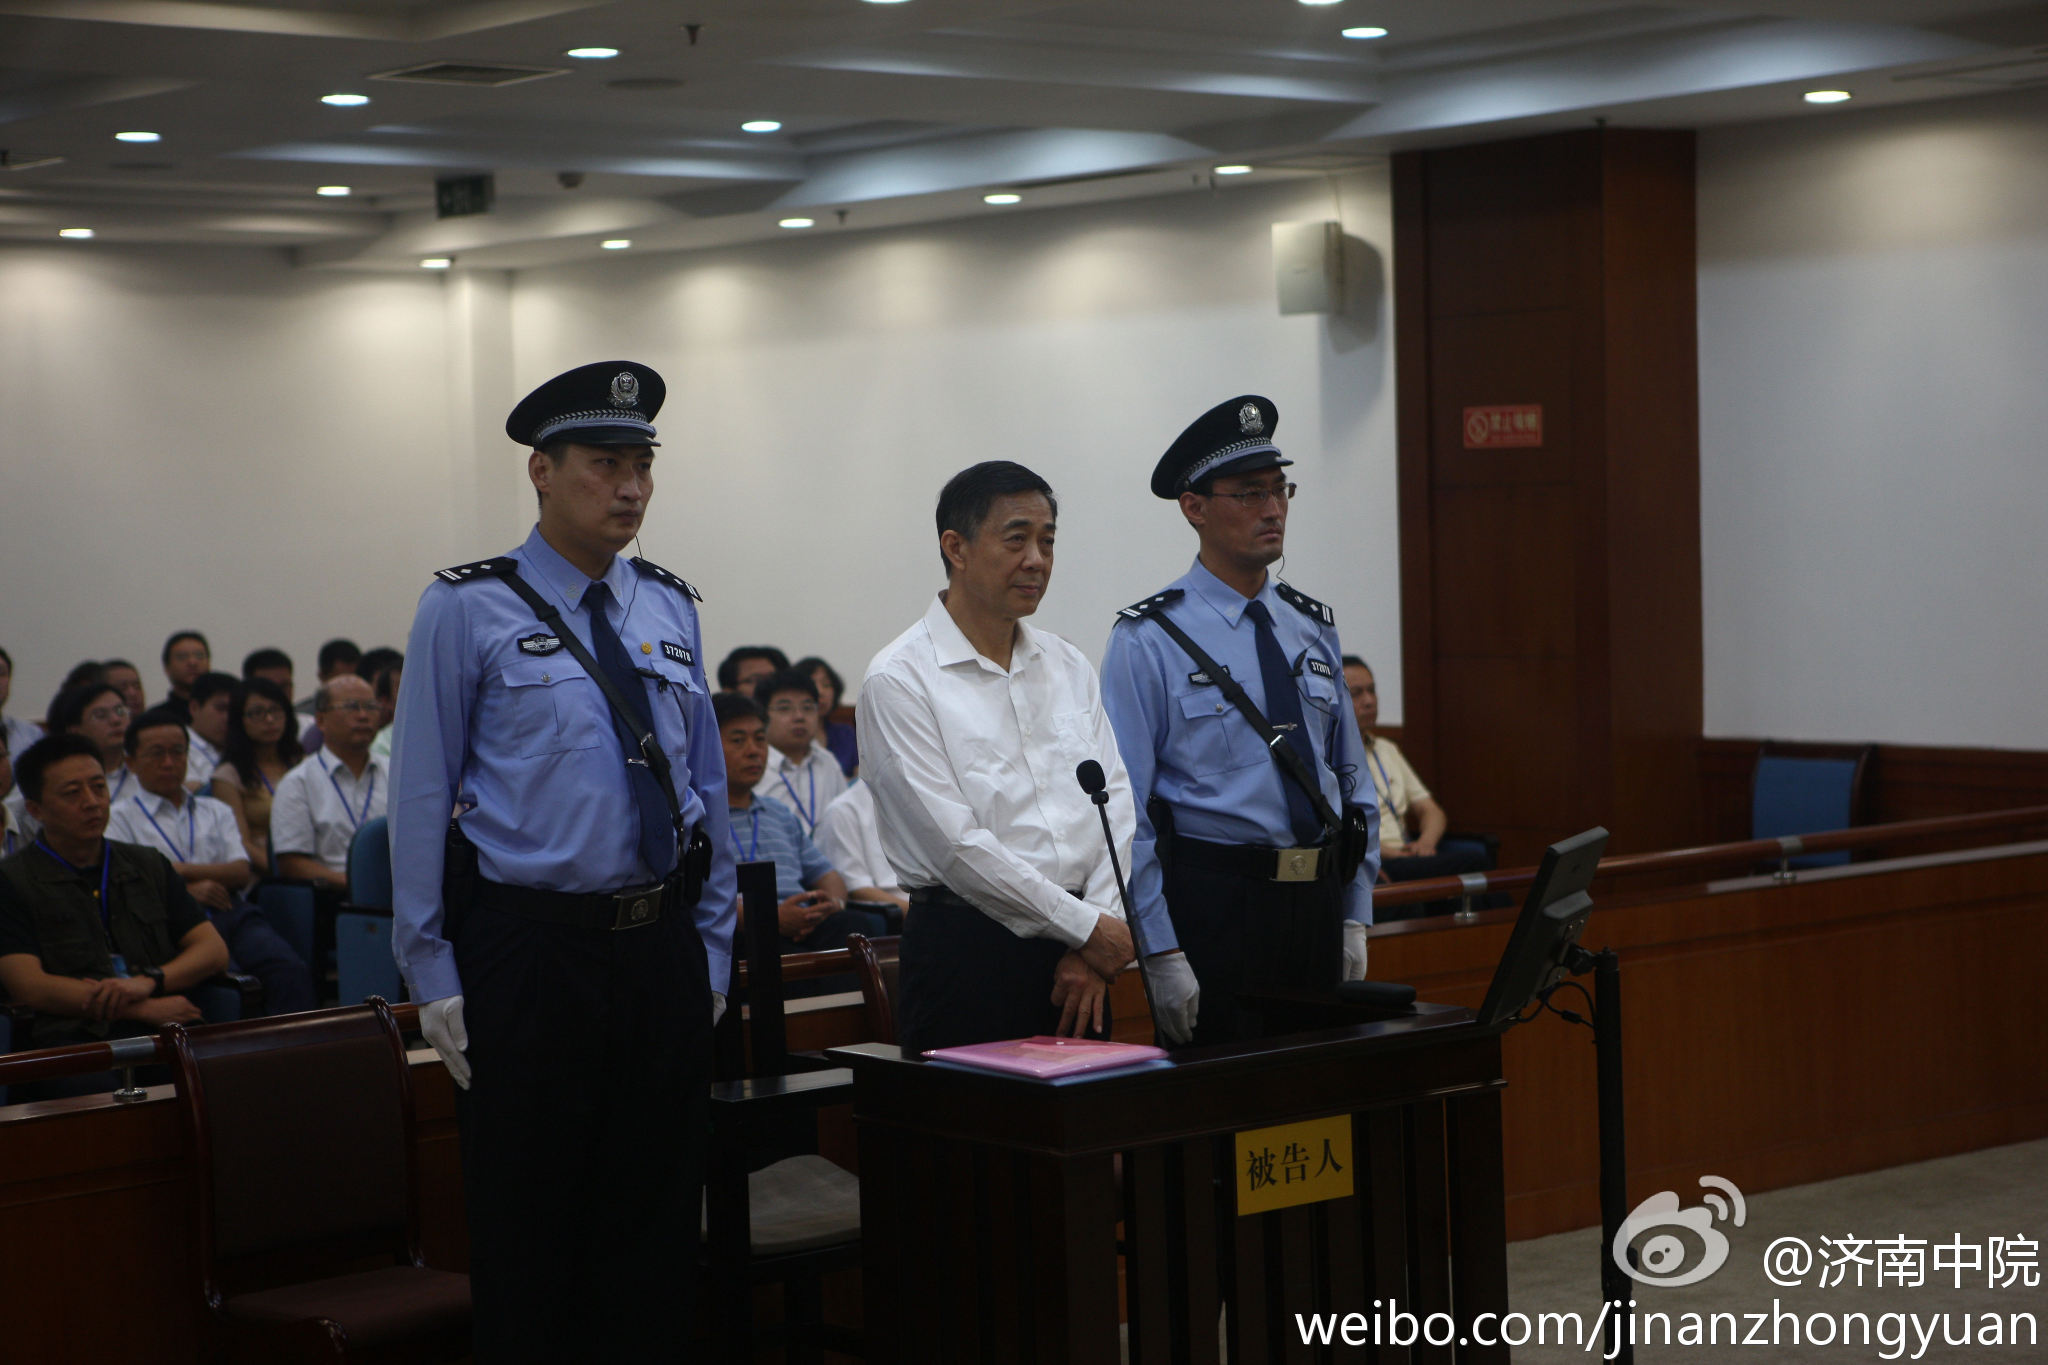 Bo Xilai Sentenced to Life in Prison